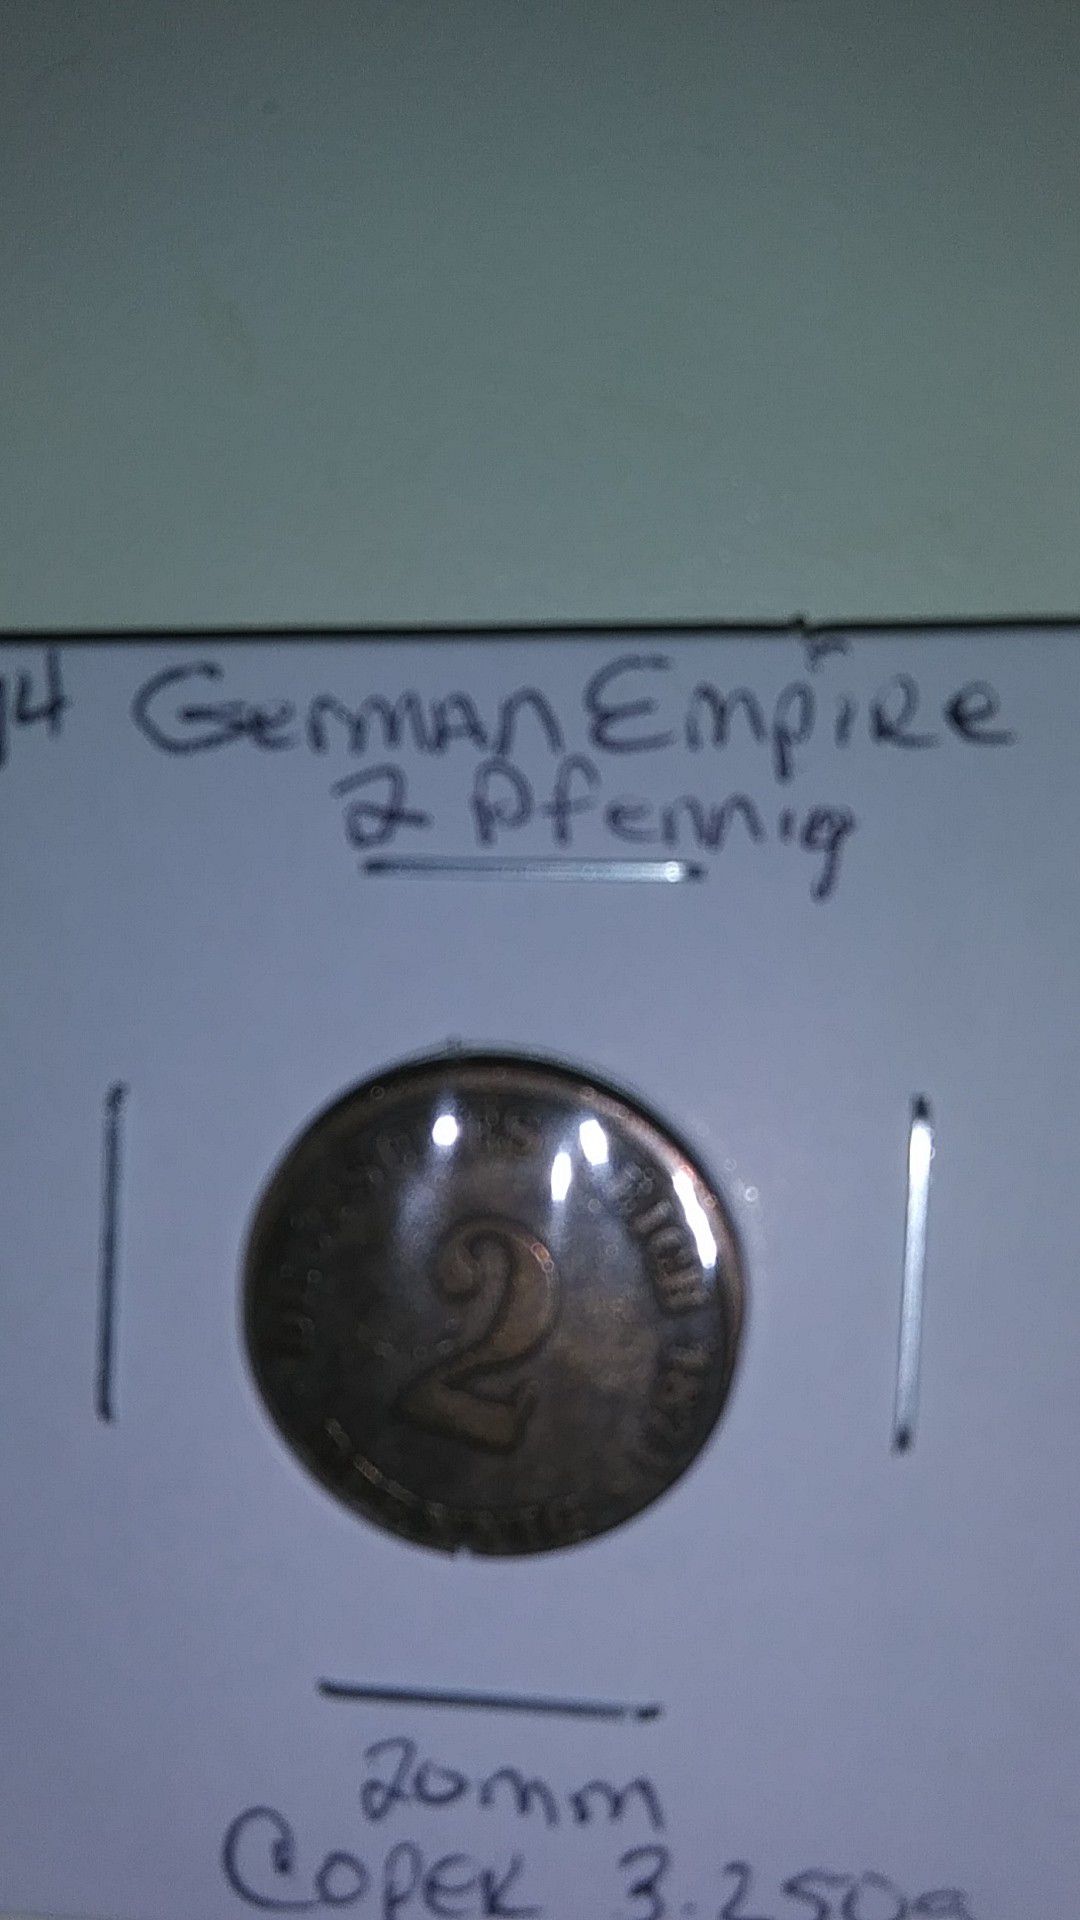 1874 German Empire 2 pfennig coin